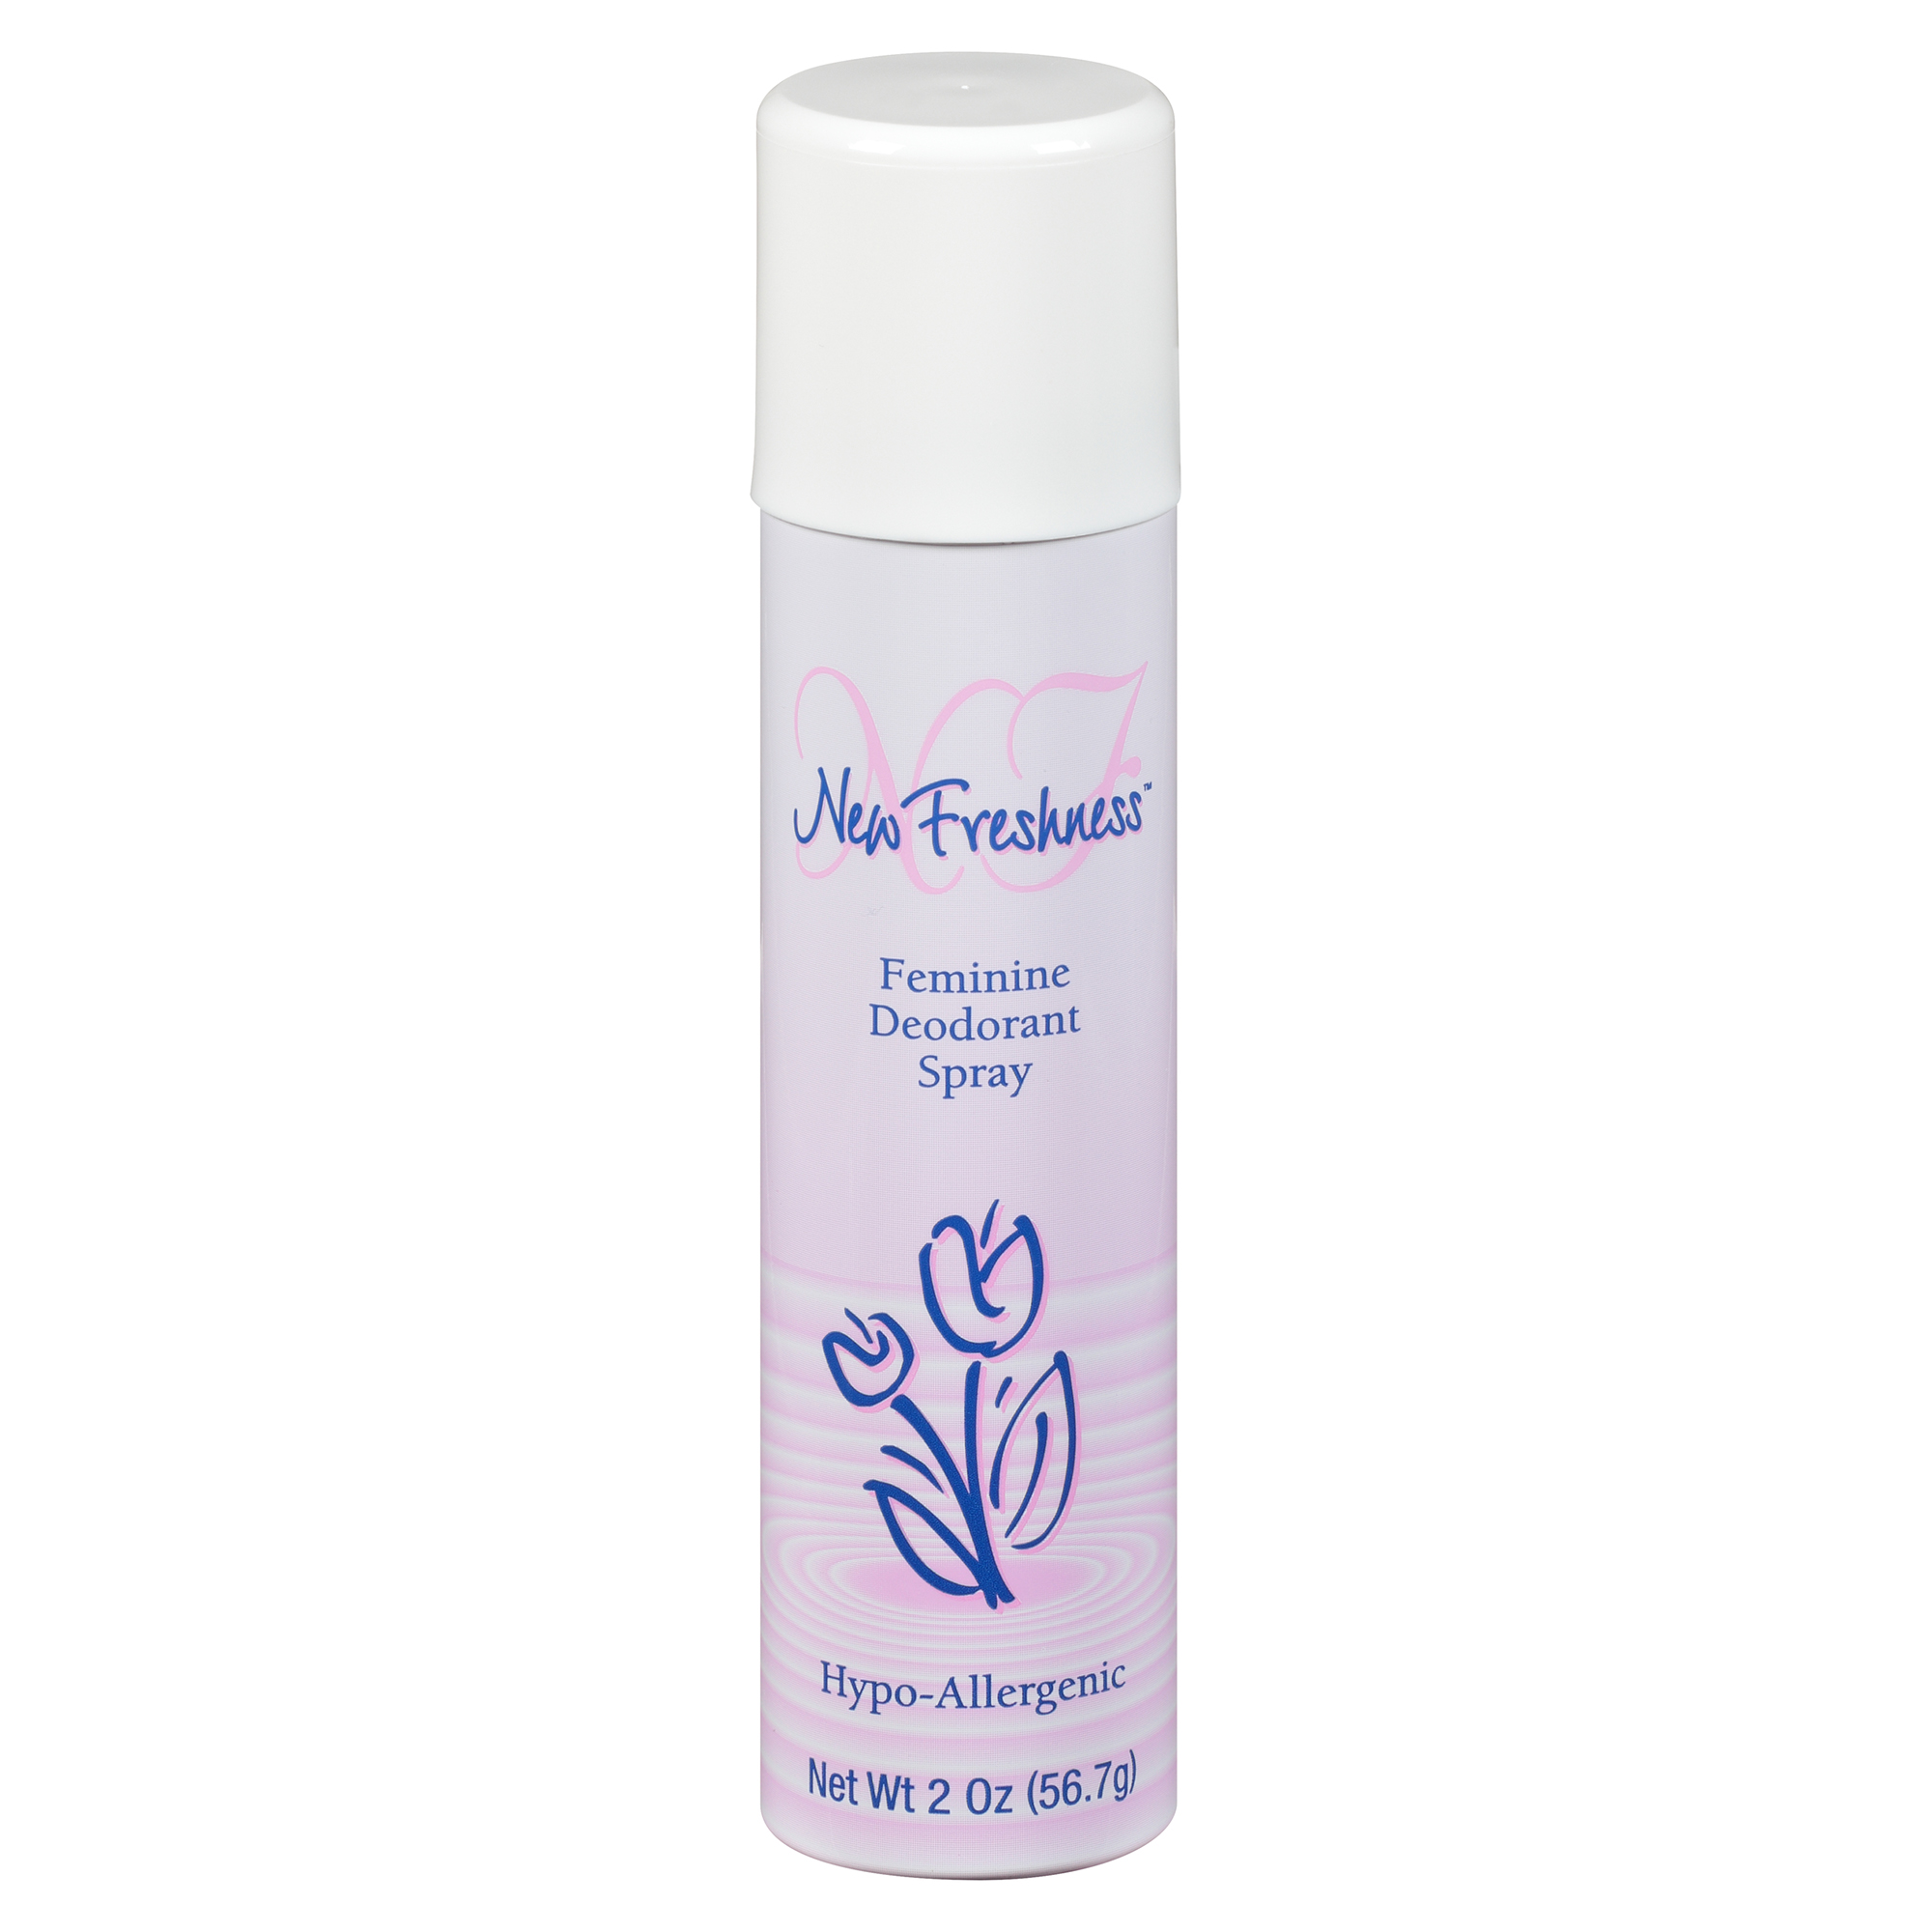 New Freshness Hypoallergenic Feminine Deodorant Spray, 2 Oz - image 1 of 12